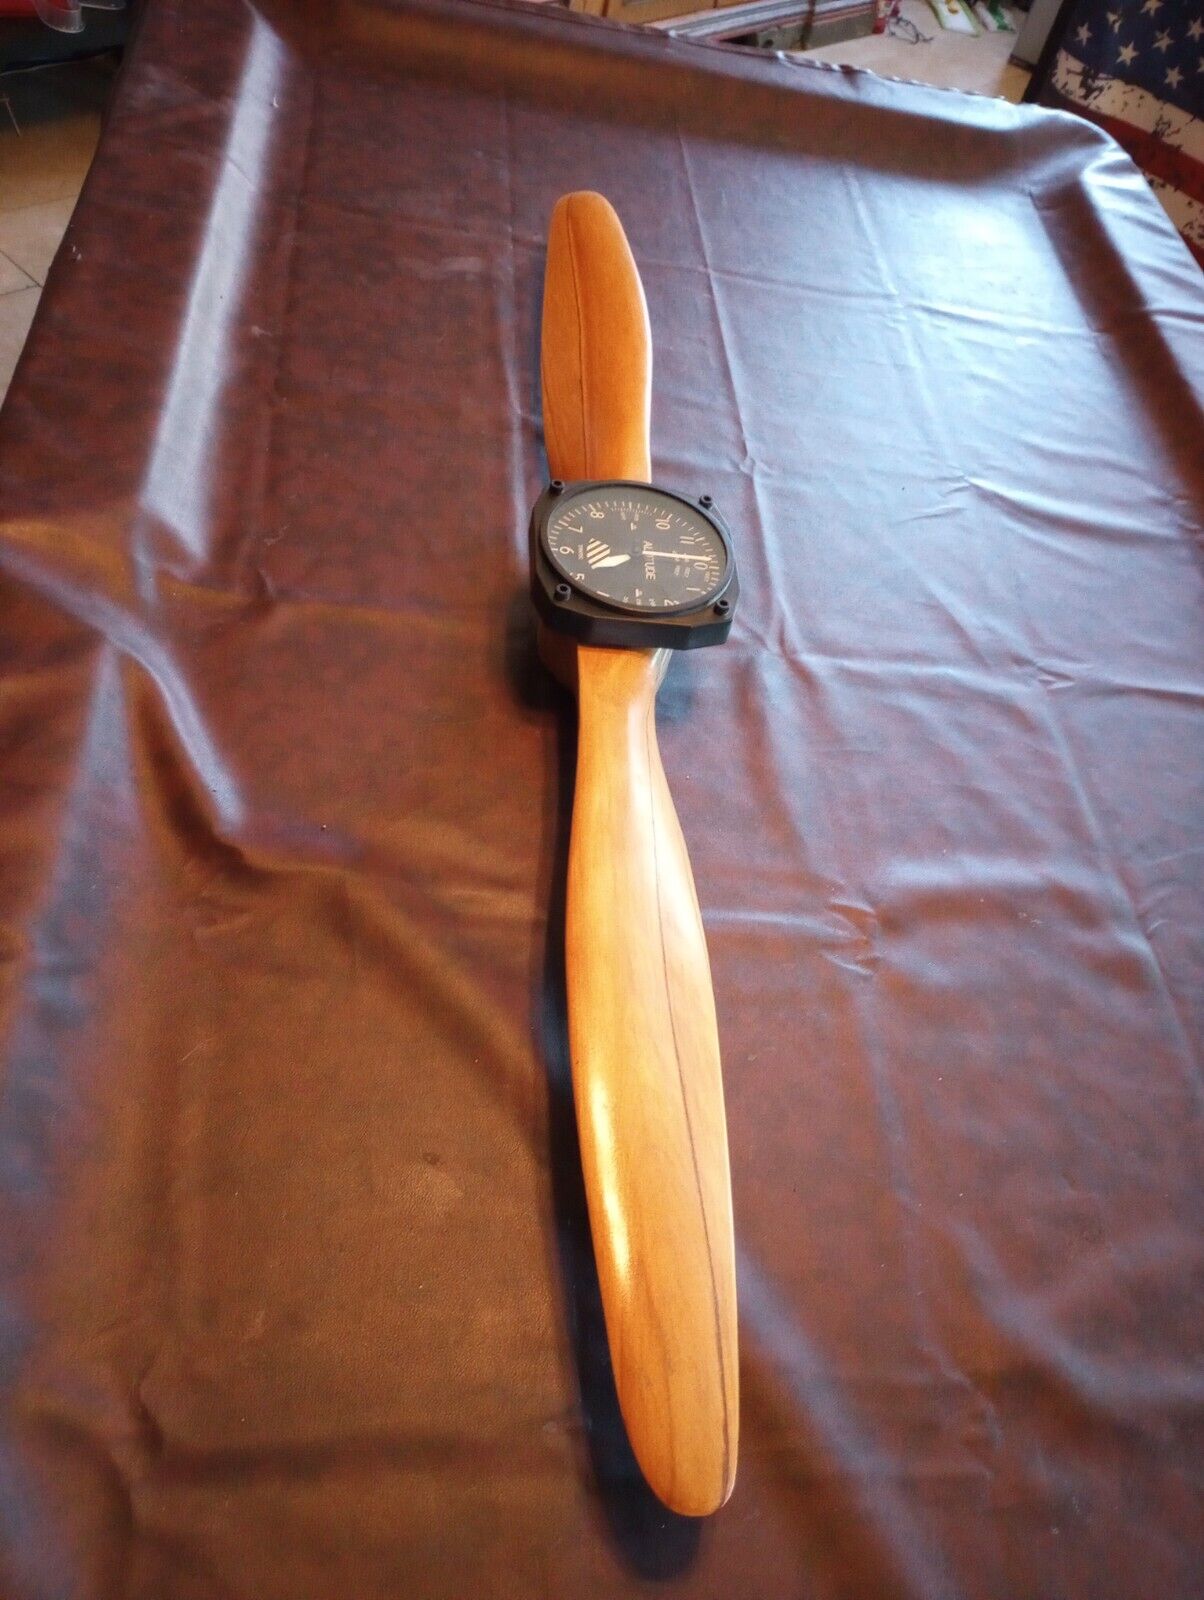 Authentic Wood Airplane Propeller Clock Altitude Meter Trintec